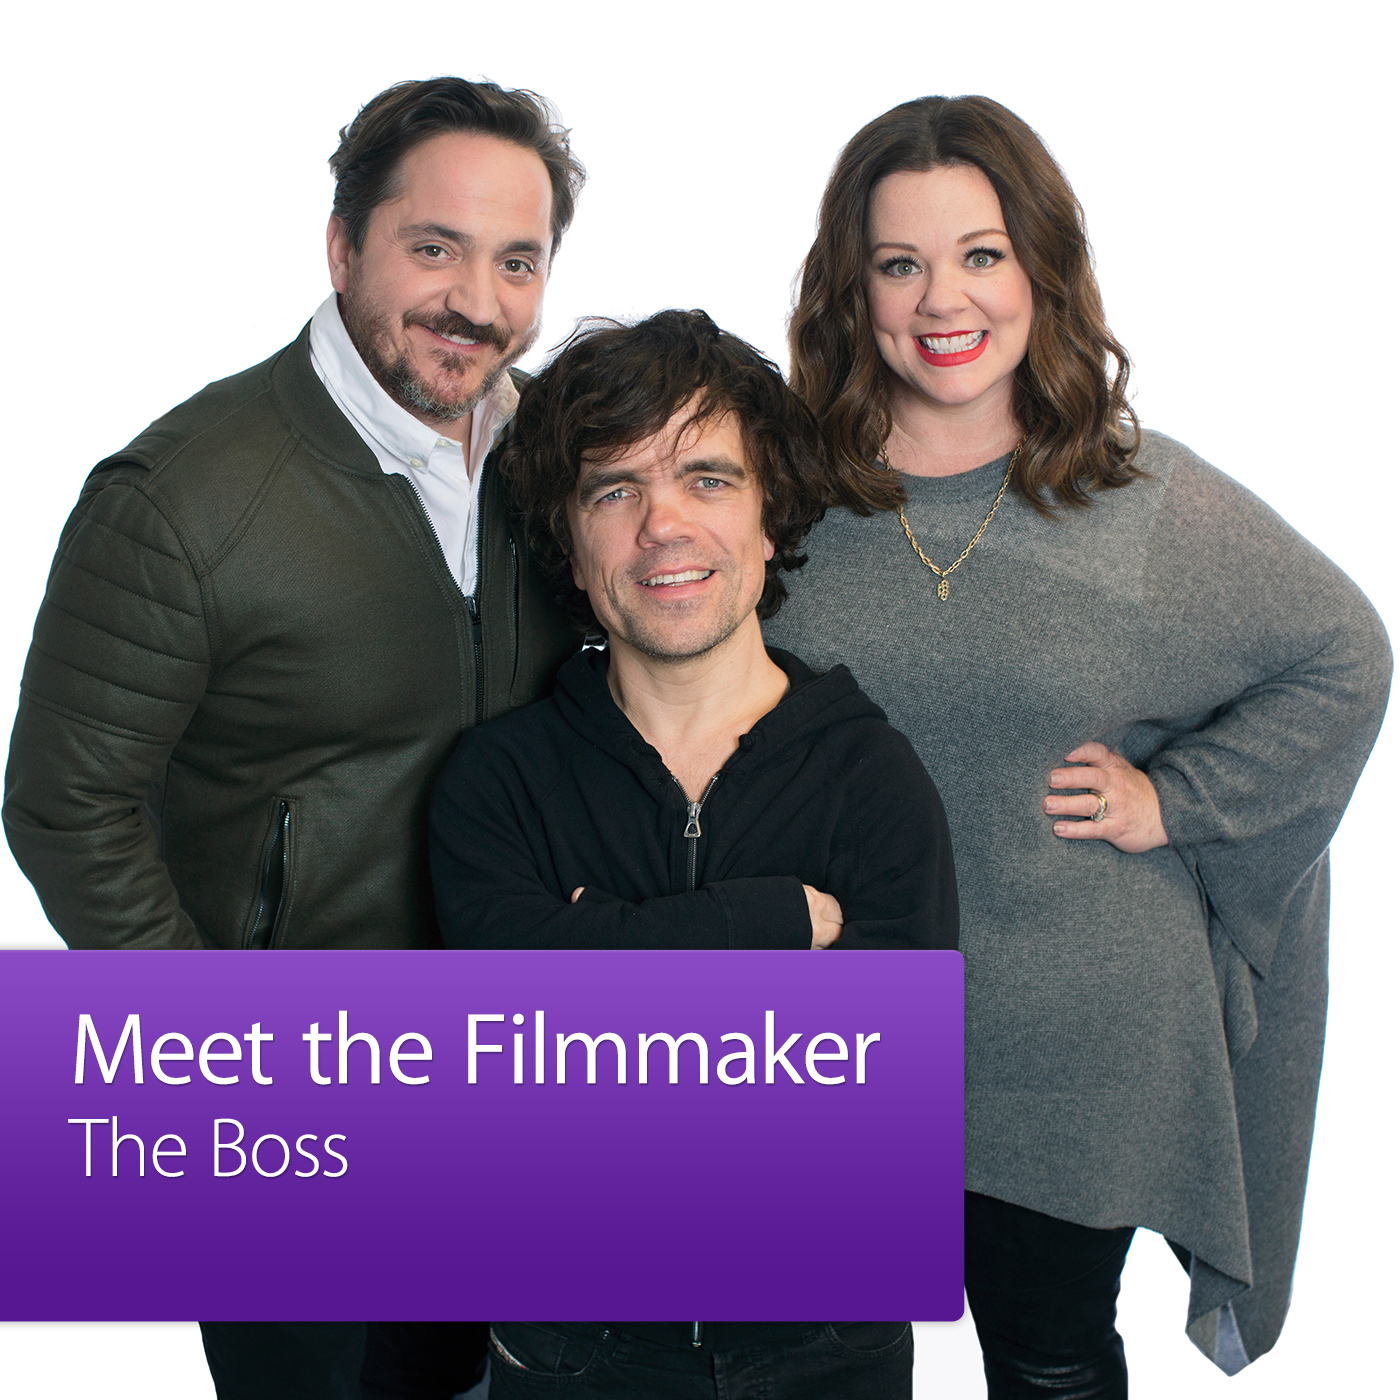 The Boss: Meet the Filmmaker